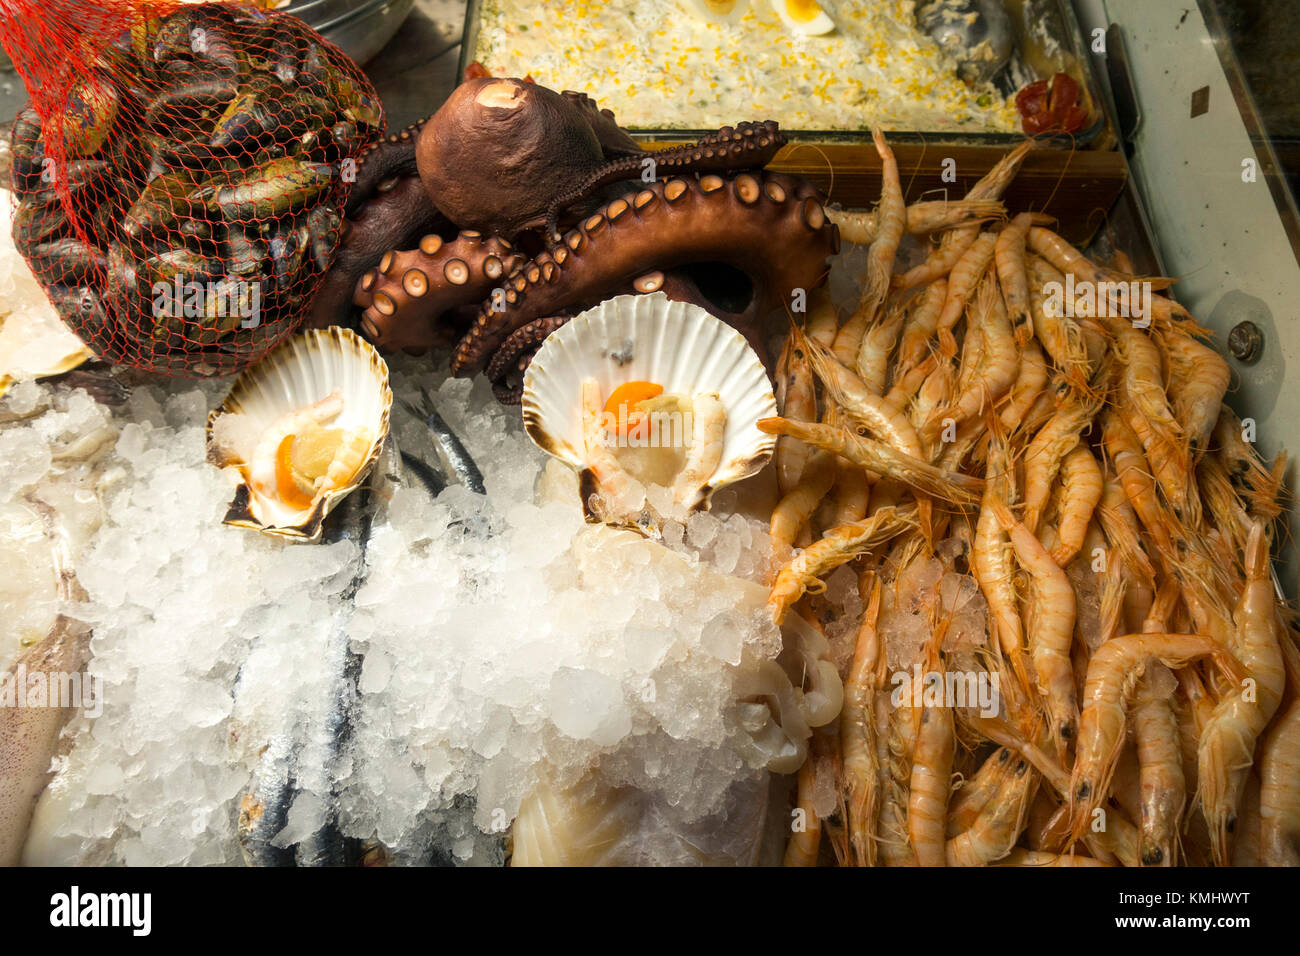 Anzeige der Meeresfrüchte, Muscheln, Garnelen, Muscheln in spanische Tapas Bar, Malaga, Andalusien, Spanien. Stockfoto